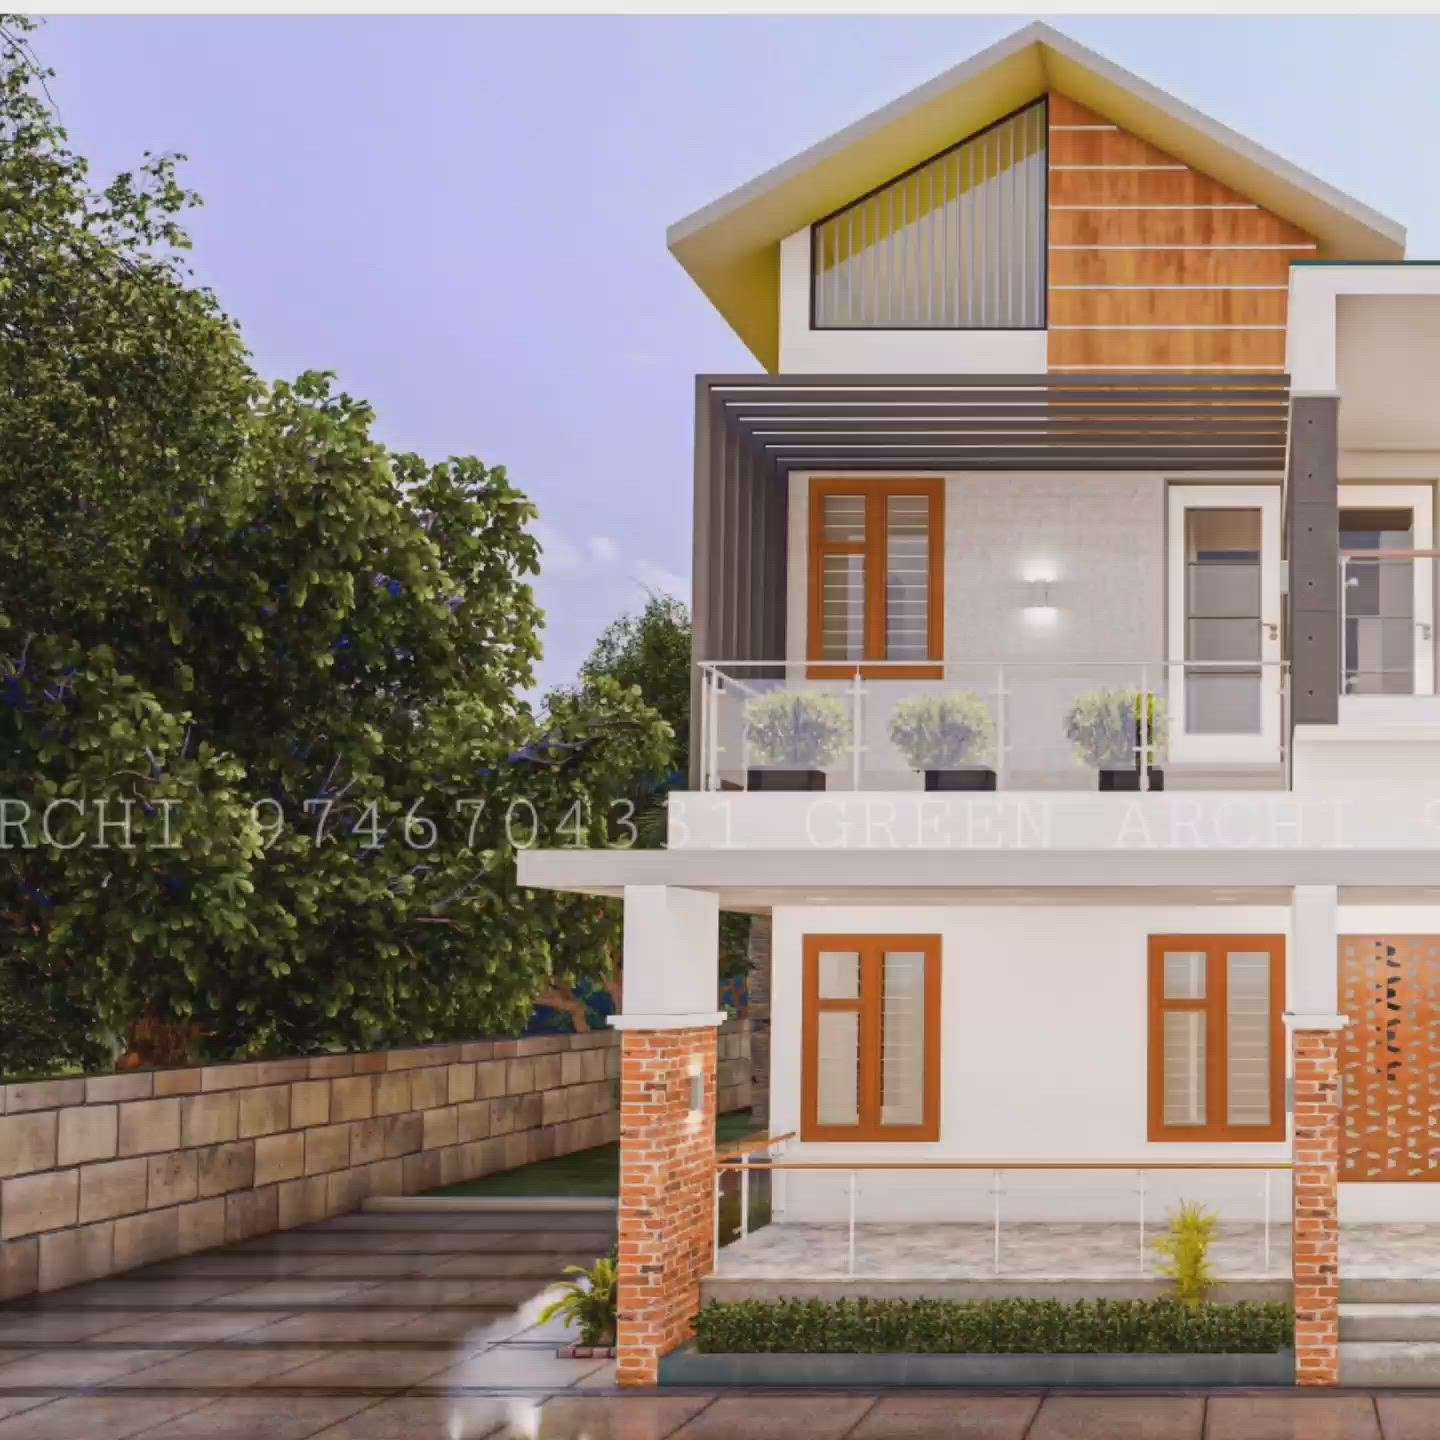 കുറഞ്ഞ ചിലവിൽ വീടിന് അടിപൊളി 3d ചെയ്യാം..
resident design for Srejith Kollam
Green Archi